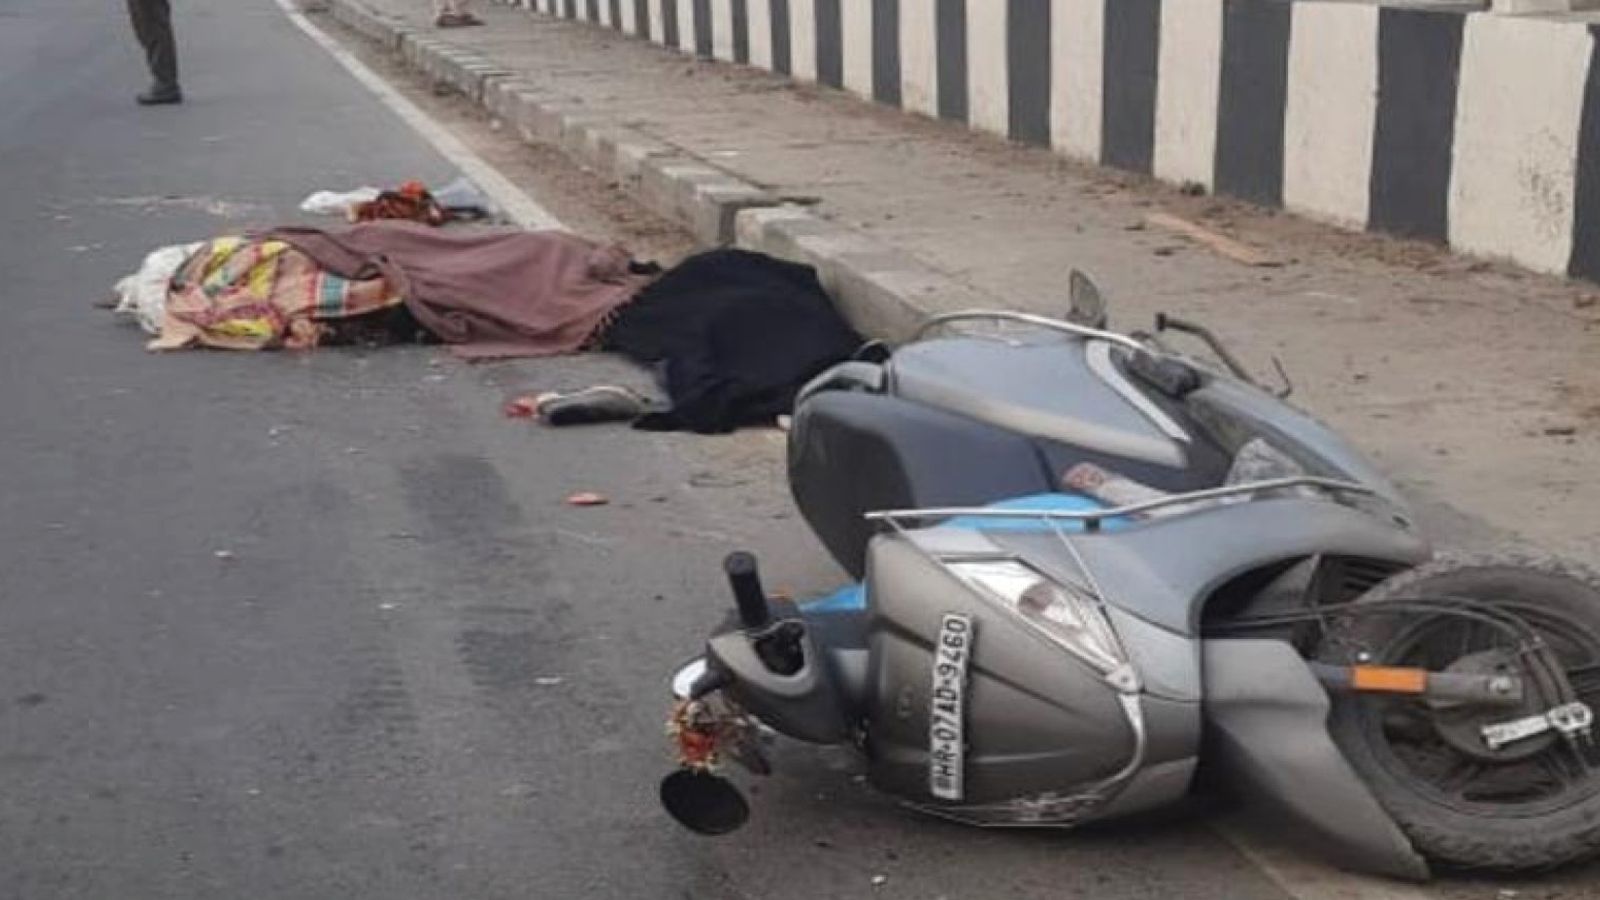 Mangolpuri Accident: यू-टर्न से मौत! पिकअप कार की टक्कर से स्कूटर के परखच्चे उड़े, दो दोस्तों की जान गई